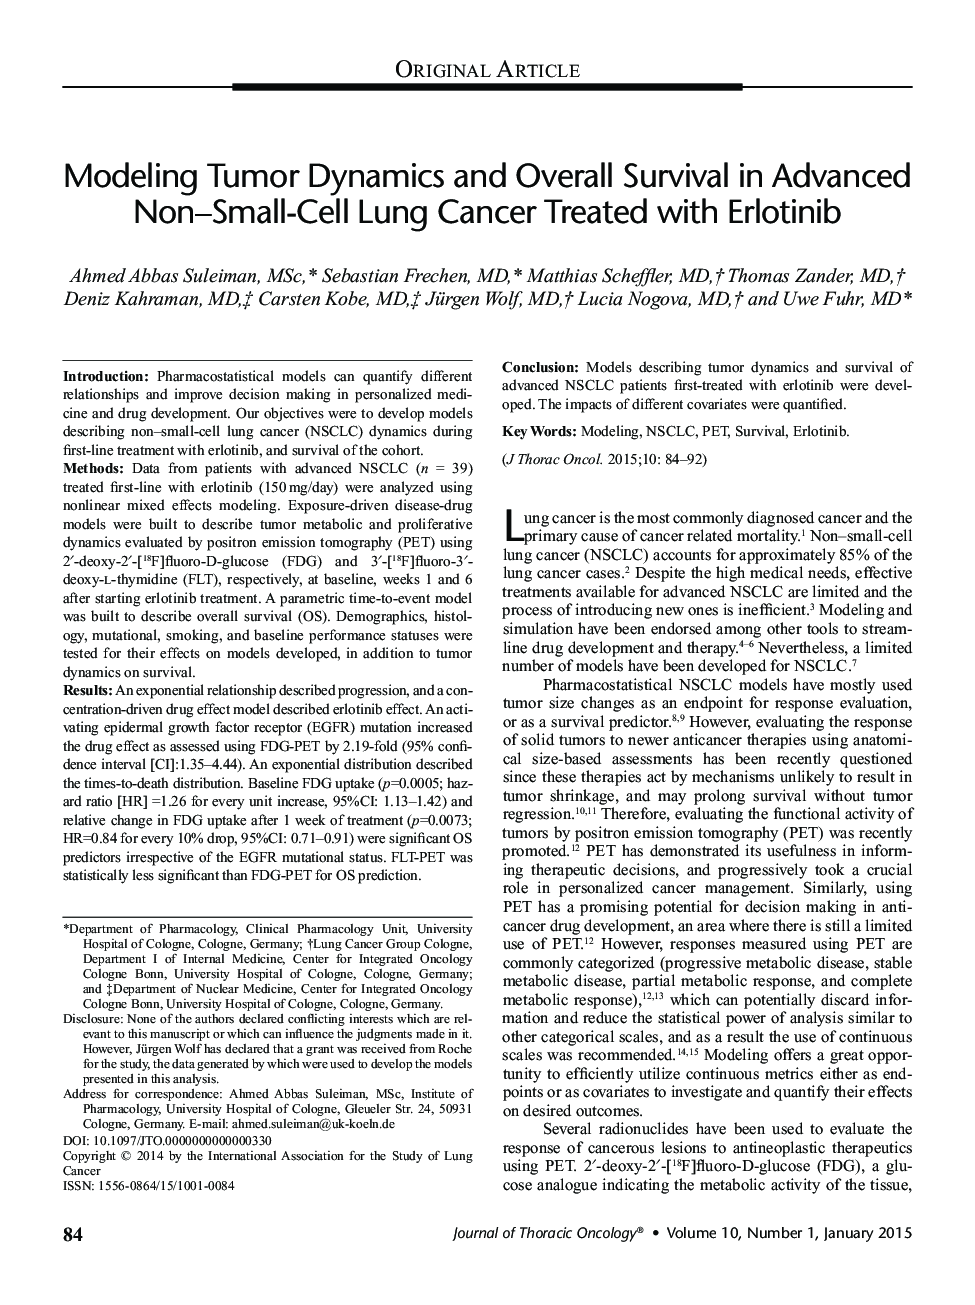 مدل سازی دینامیک تومور و بقاء کلی در سرطان های پیشرفته غیر سلولی کوچک ریه درمان شده با ارلوتینیب 